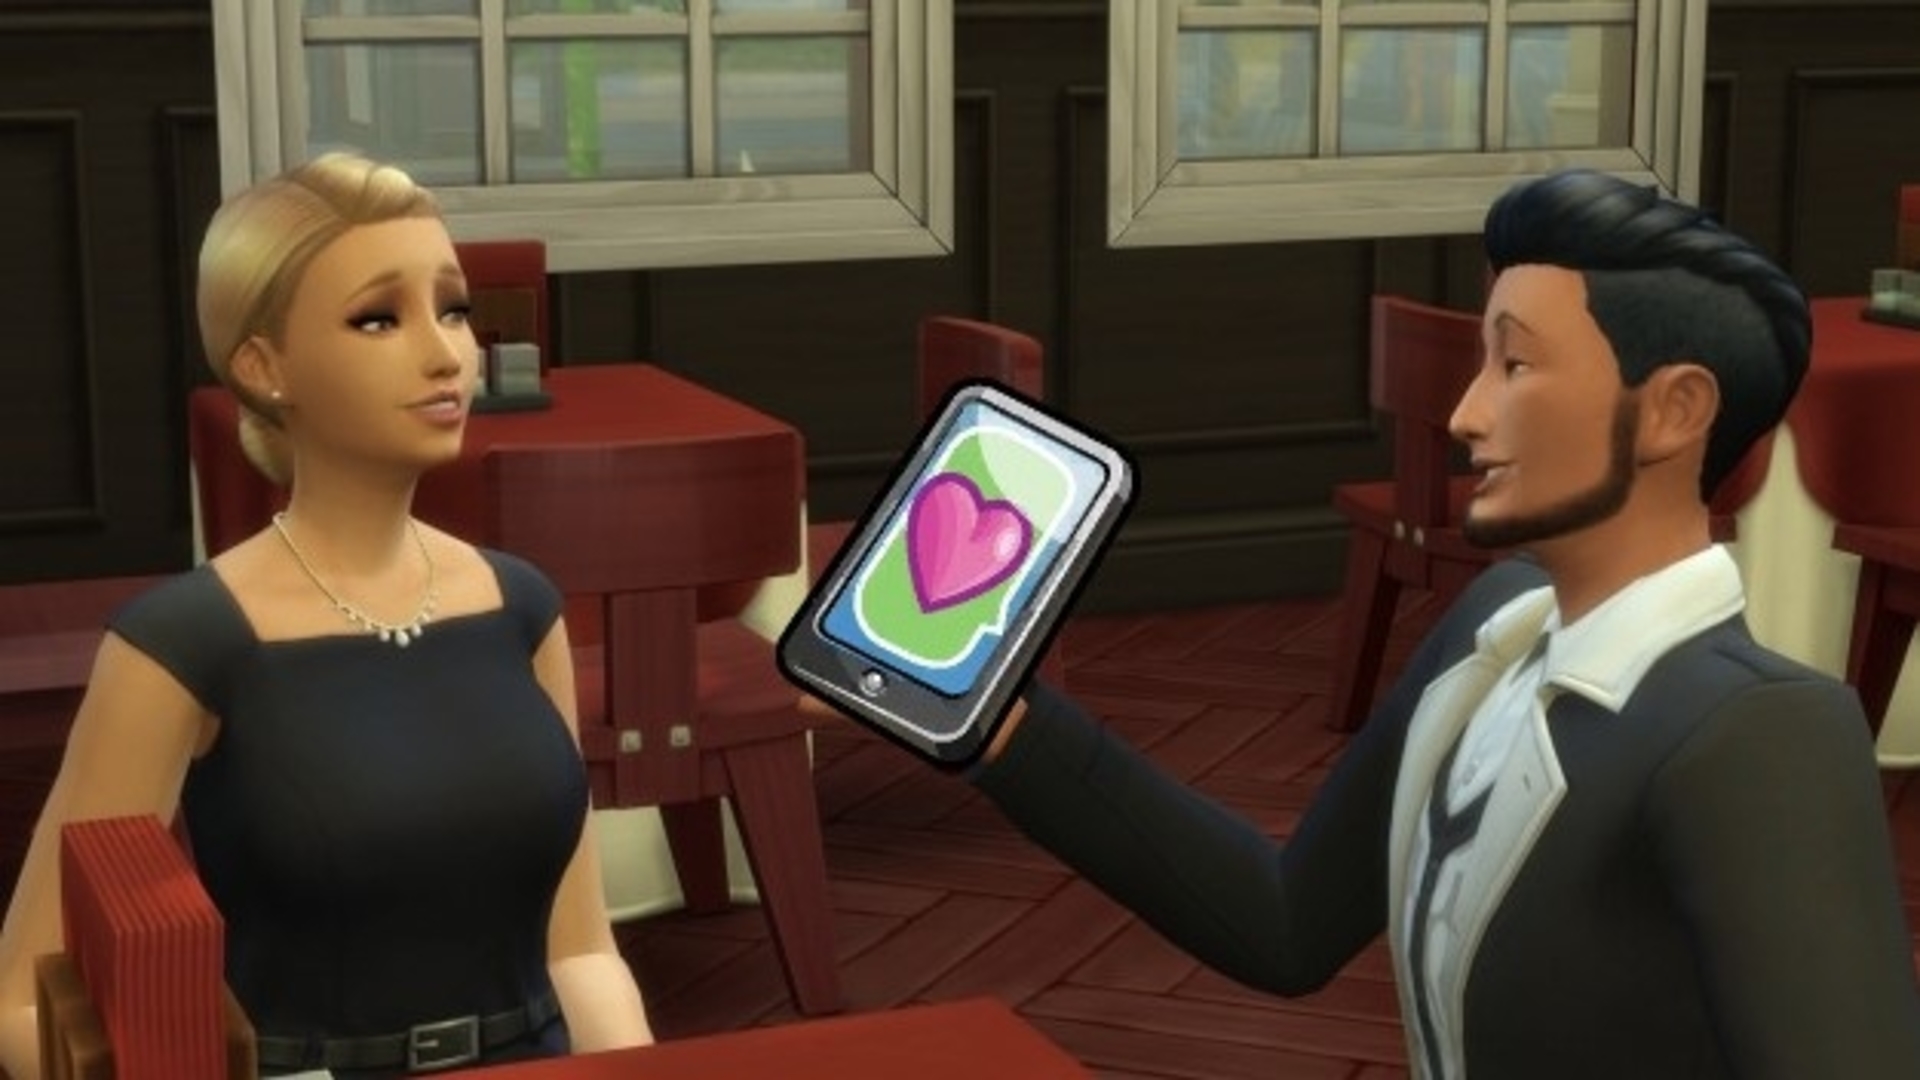 Fll Hd Sex Modas - The best Sims 4 sex mods for PC | PCGamesN